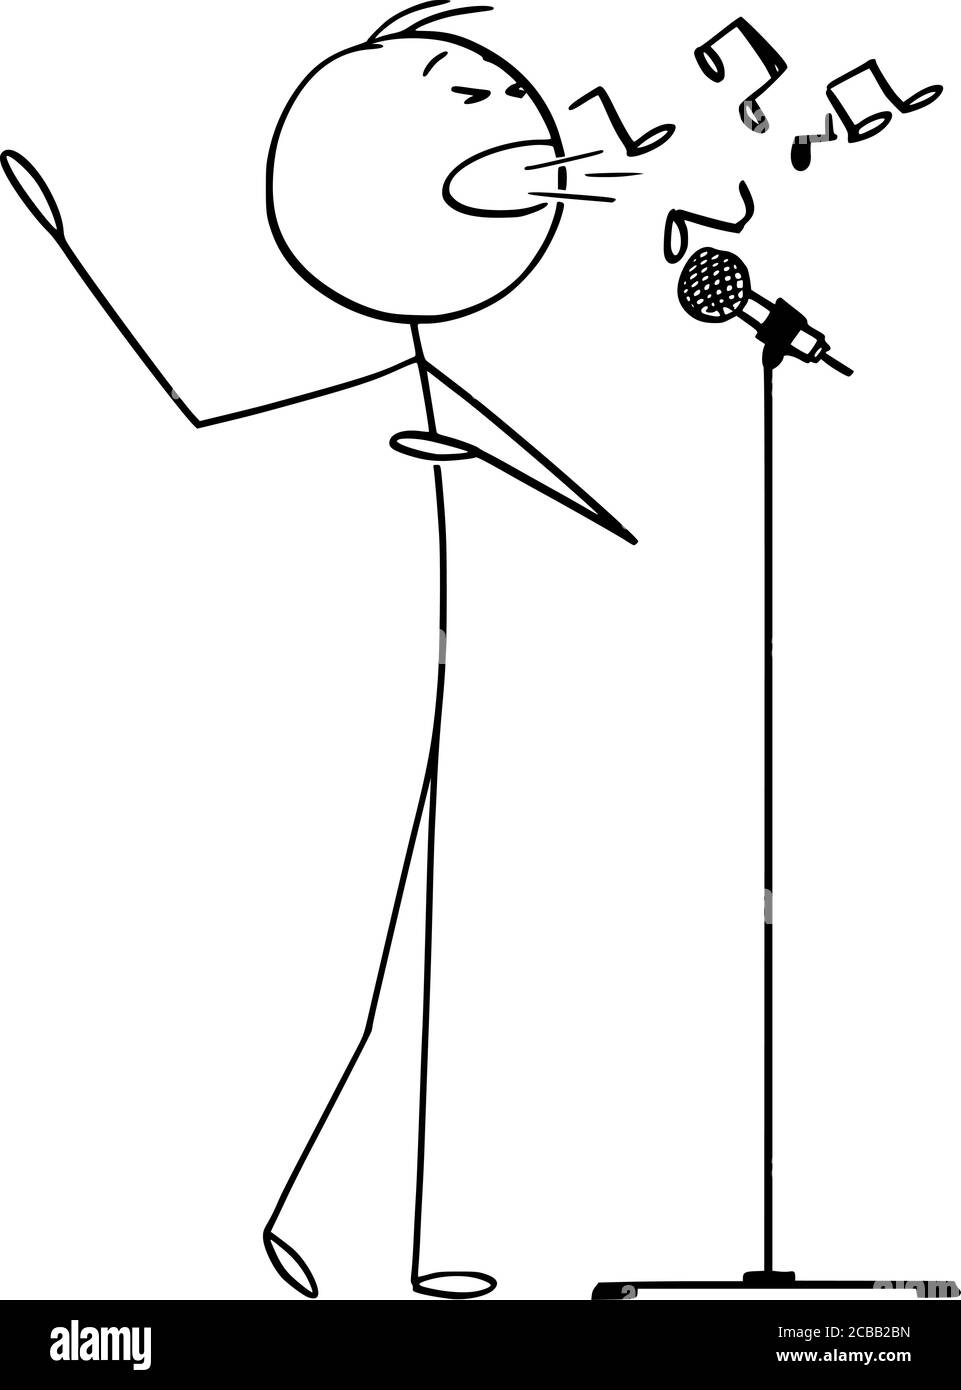 Dessin de dessin vectoriel de bâton de dessin dessin conceptuel illustration de l'homme ou du chanteur chantant la chanson sur scène au microphone et de créer de la musique. Illustration de Vecteur